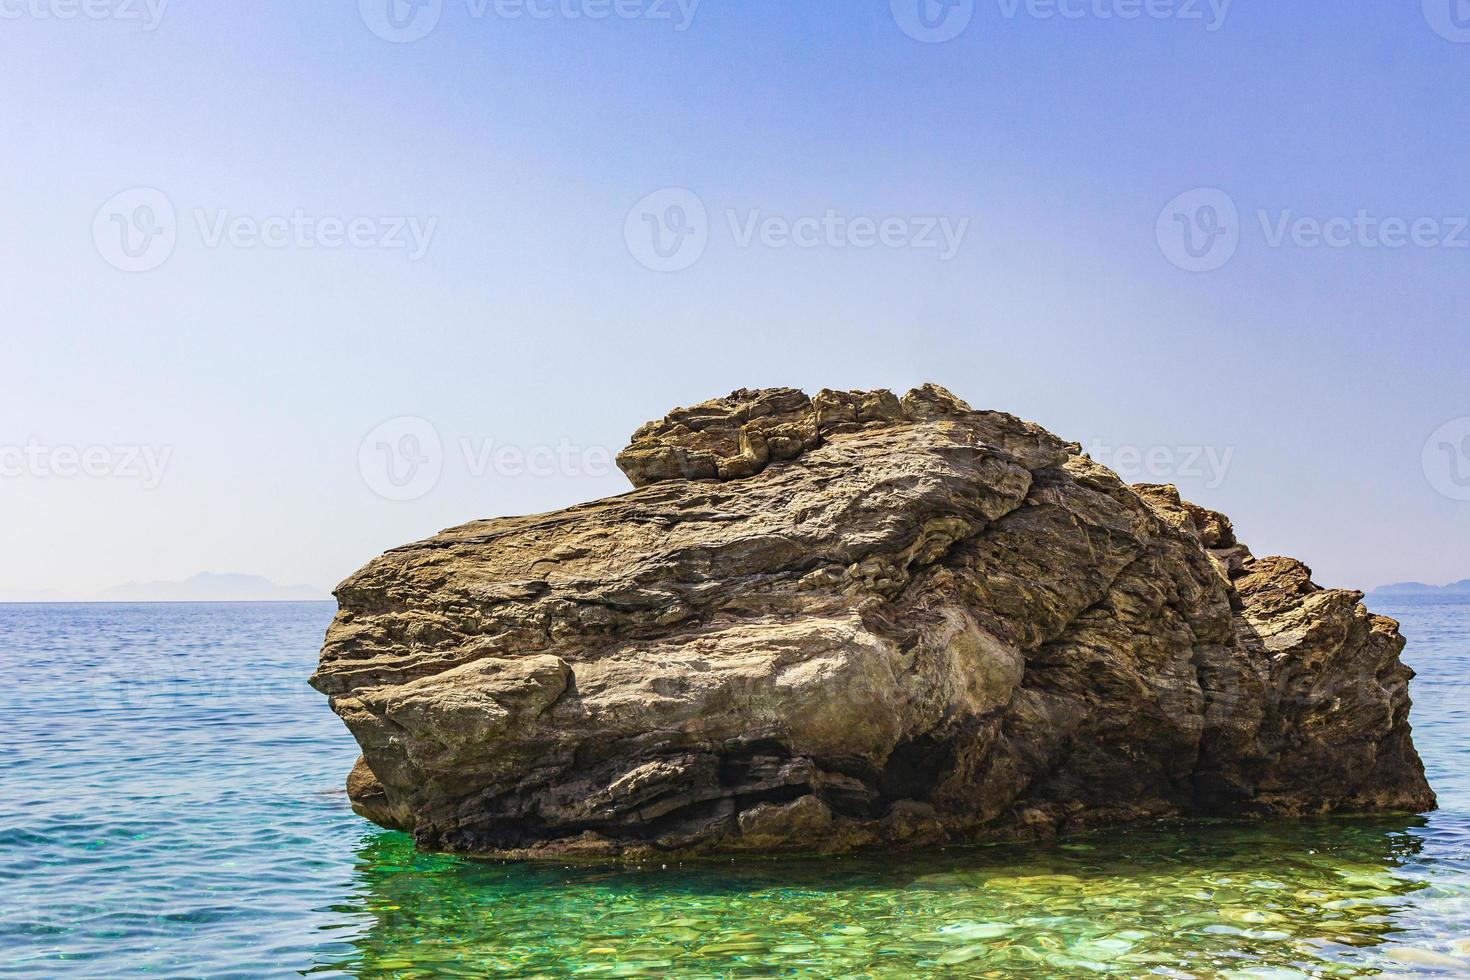 grote rots in natuurlijke kustlandschappen op kos eiland griekenland. foto